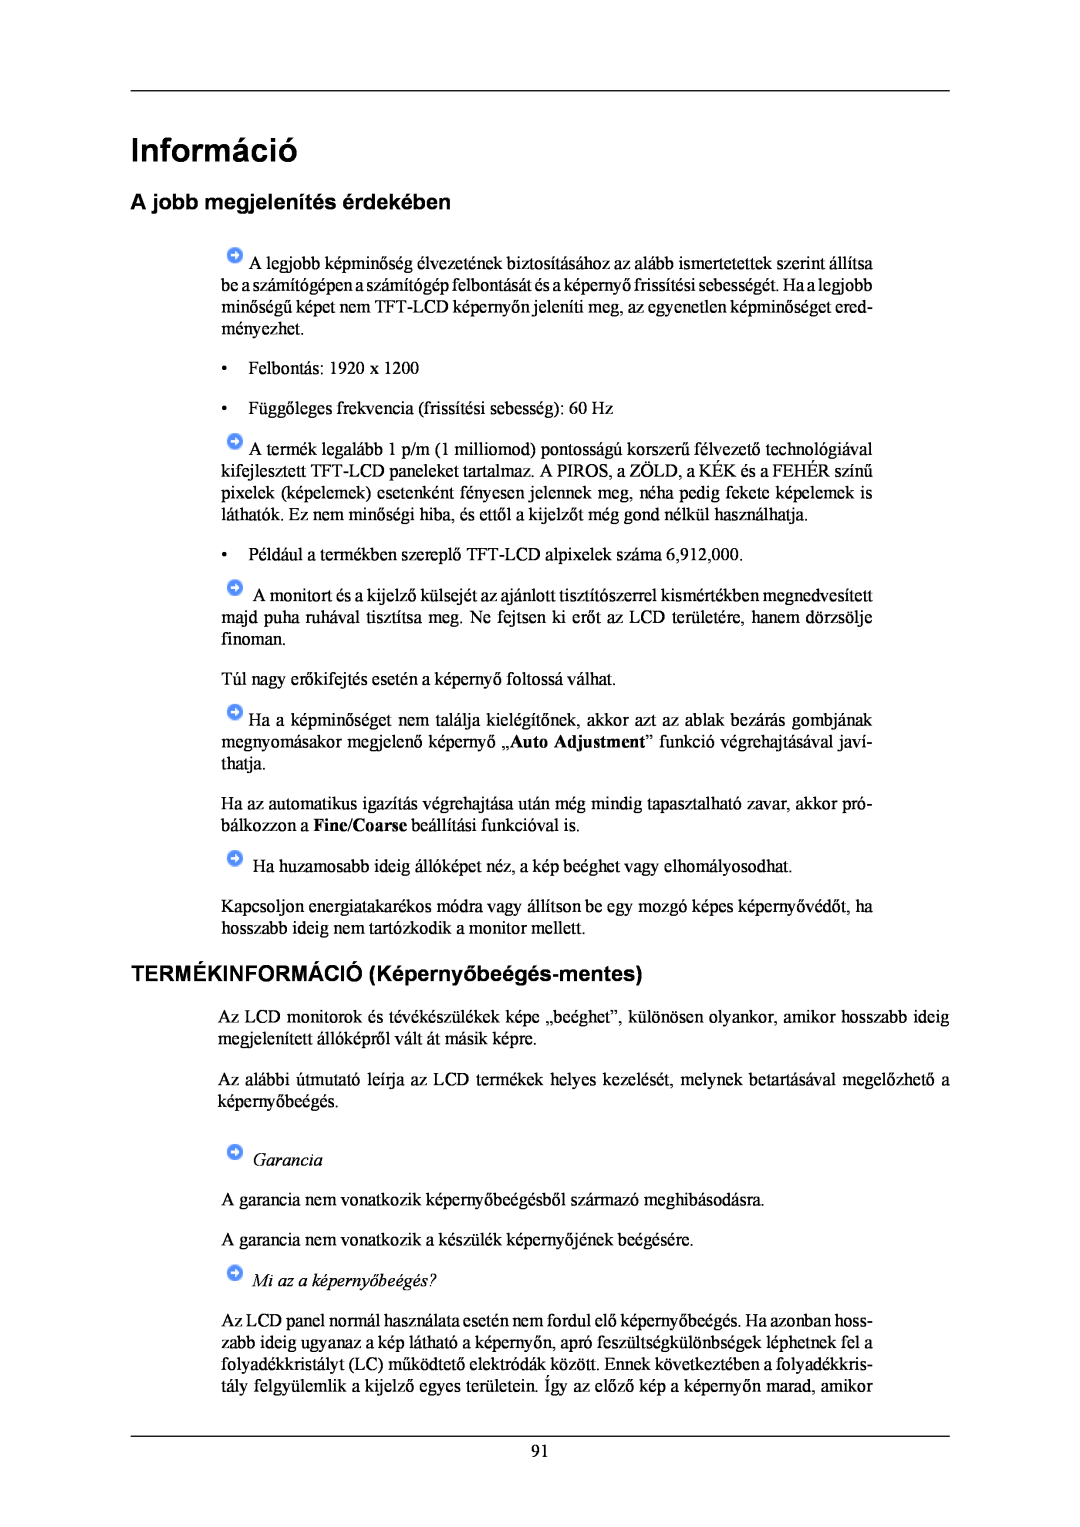 Samsung LS24KIEEFV/EDC manual Információ, A jobb megjelenítés érdekében, TERMÉKINFORMÁCIÓ Képernyőbeégés-mentes, Garancia 